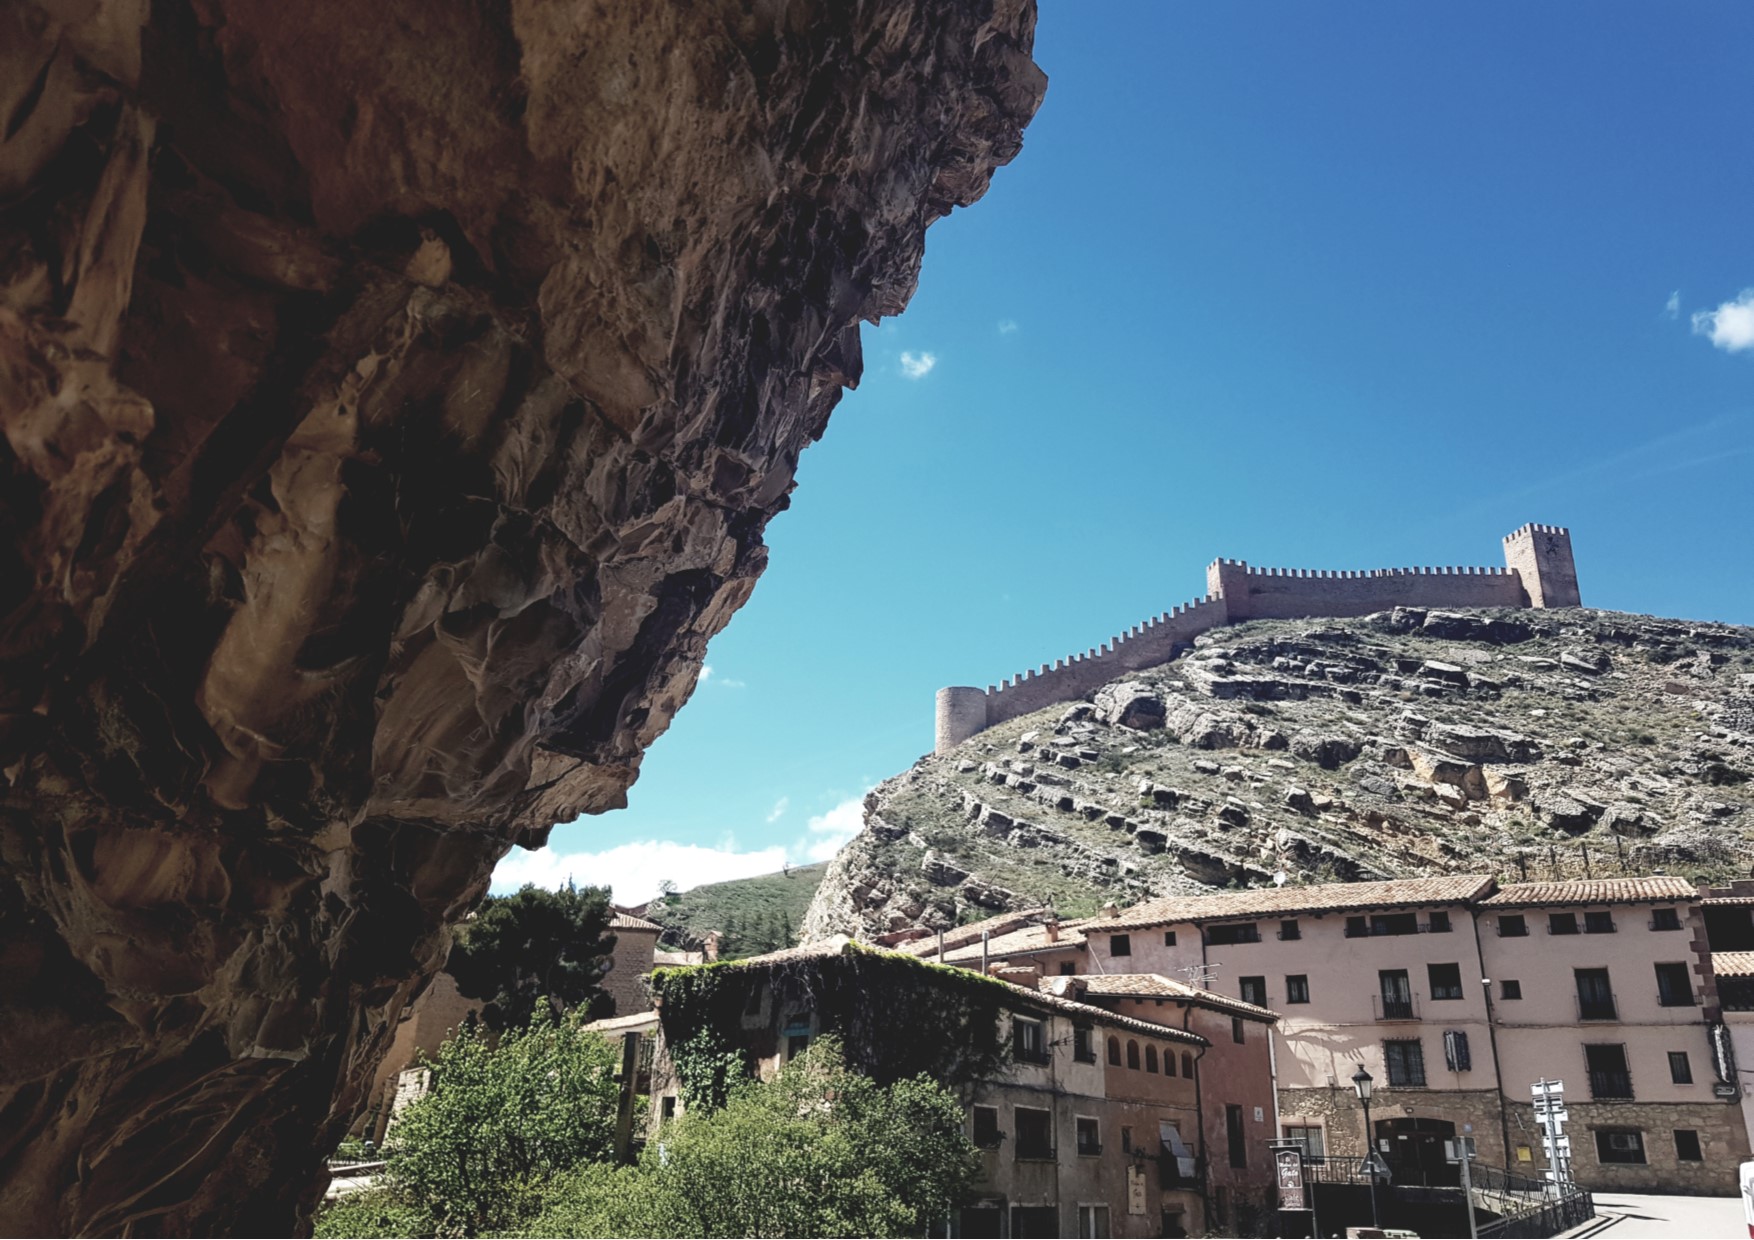 #PanorámicasQueEnamoran de #Albarracín…comenzamos #VisitasGuiadas en #Albarracín y #CasaMuseoDeAlbarracin…te esperamos!